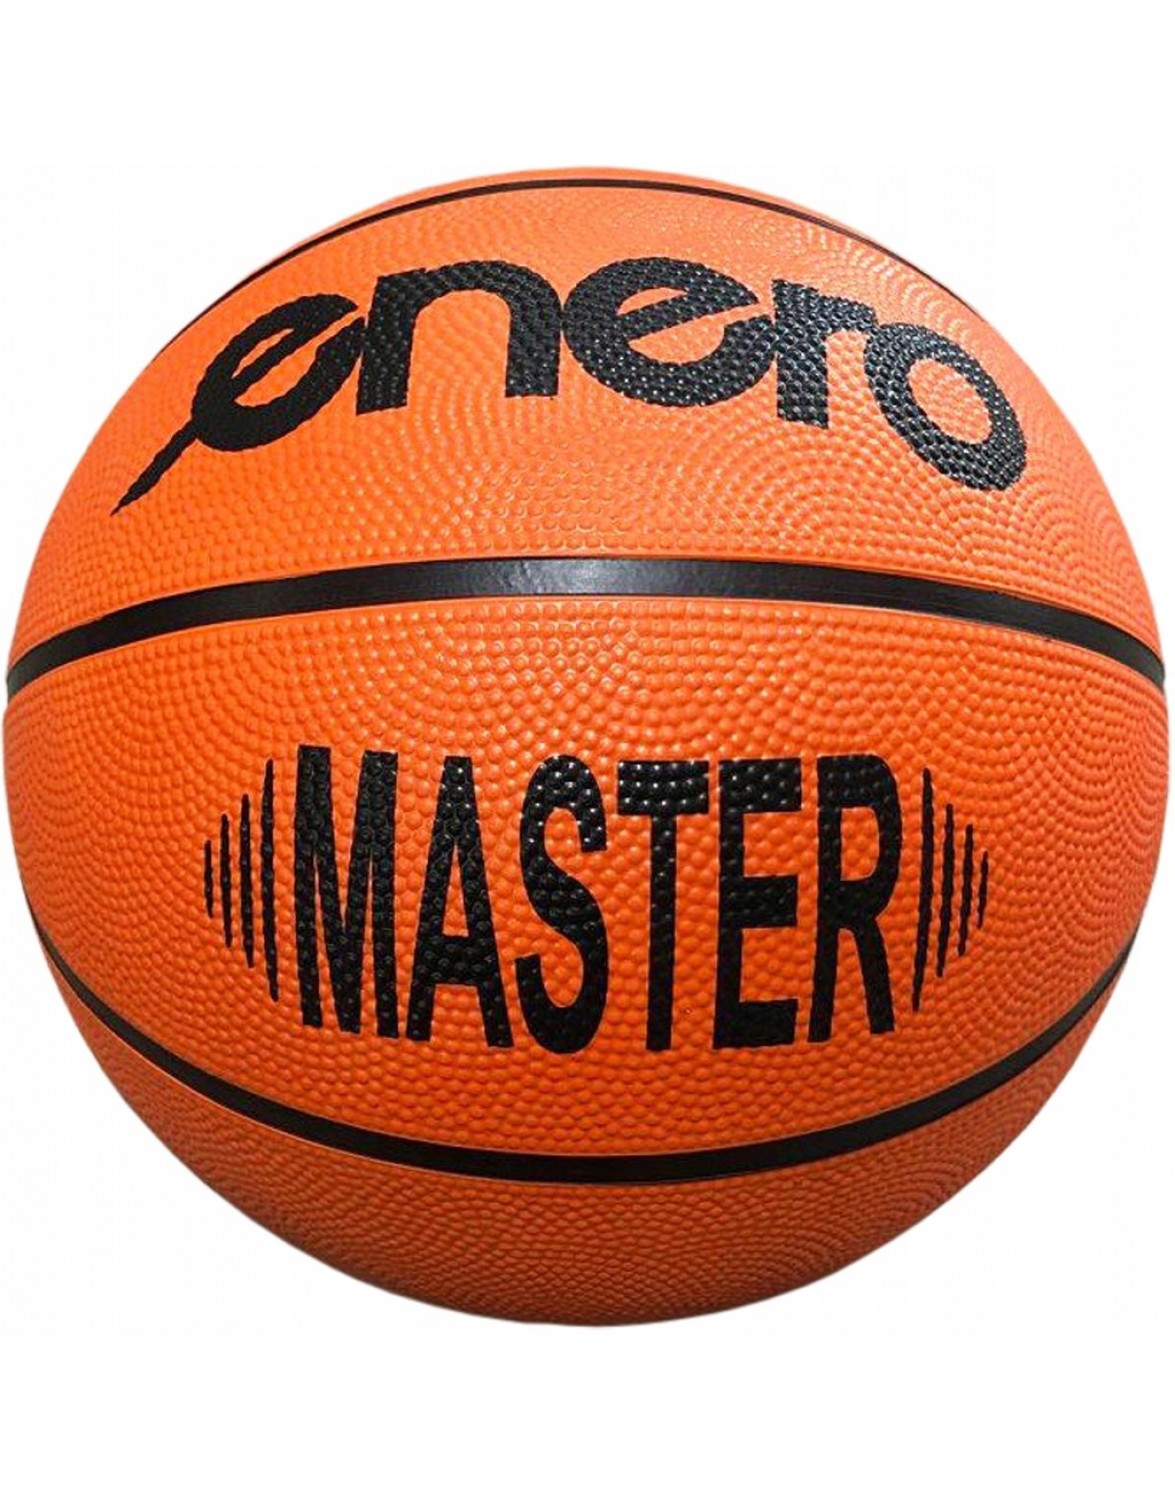 Баскетбольний м'яч Enero 334681 R. 7. ENERO MASTER 7 БАСКЕТБОЛЬНИЙ М'ЯЧ ДЛЯ ВІДПОЧИНКУ